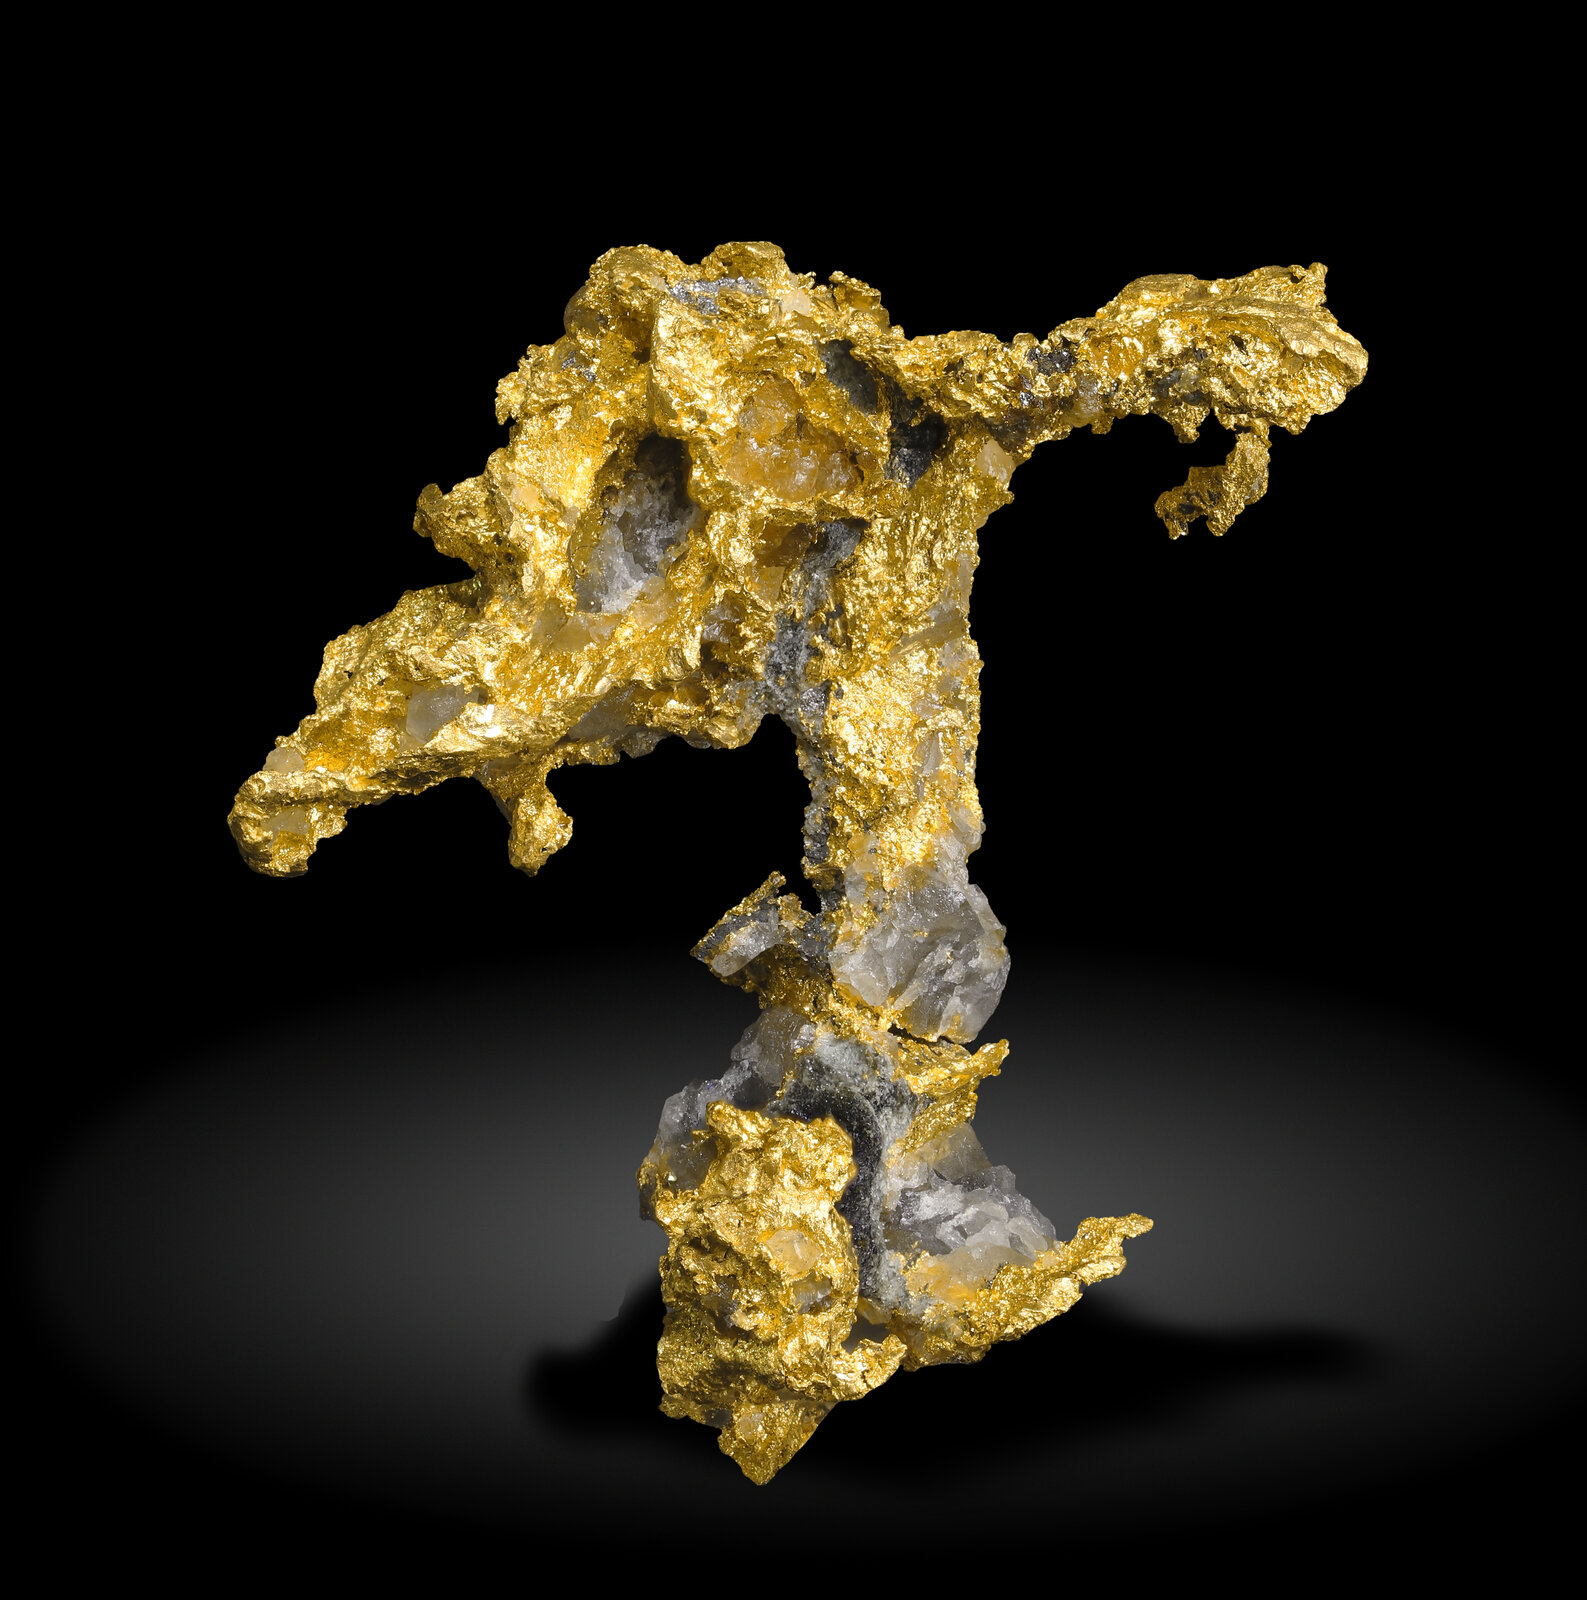 specimens/s_imagesAN9/Gold-MXJ57AN9_1107_f.jpg